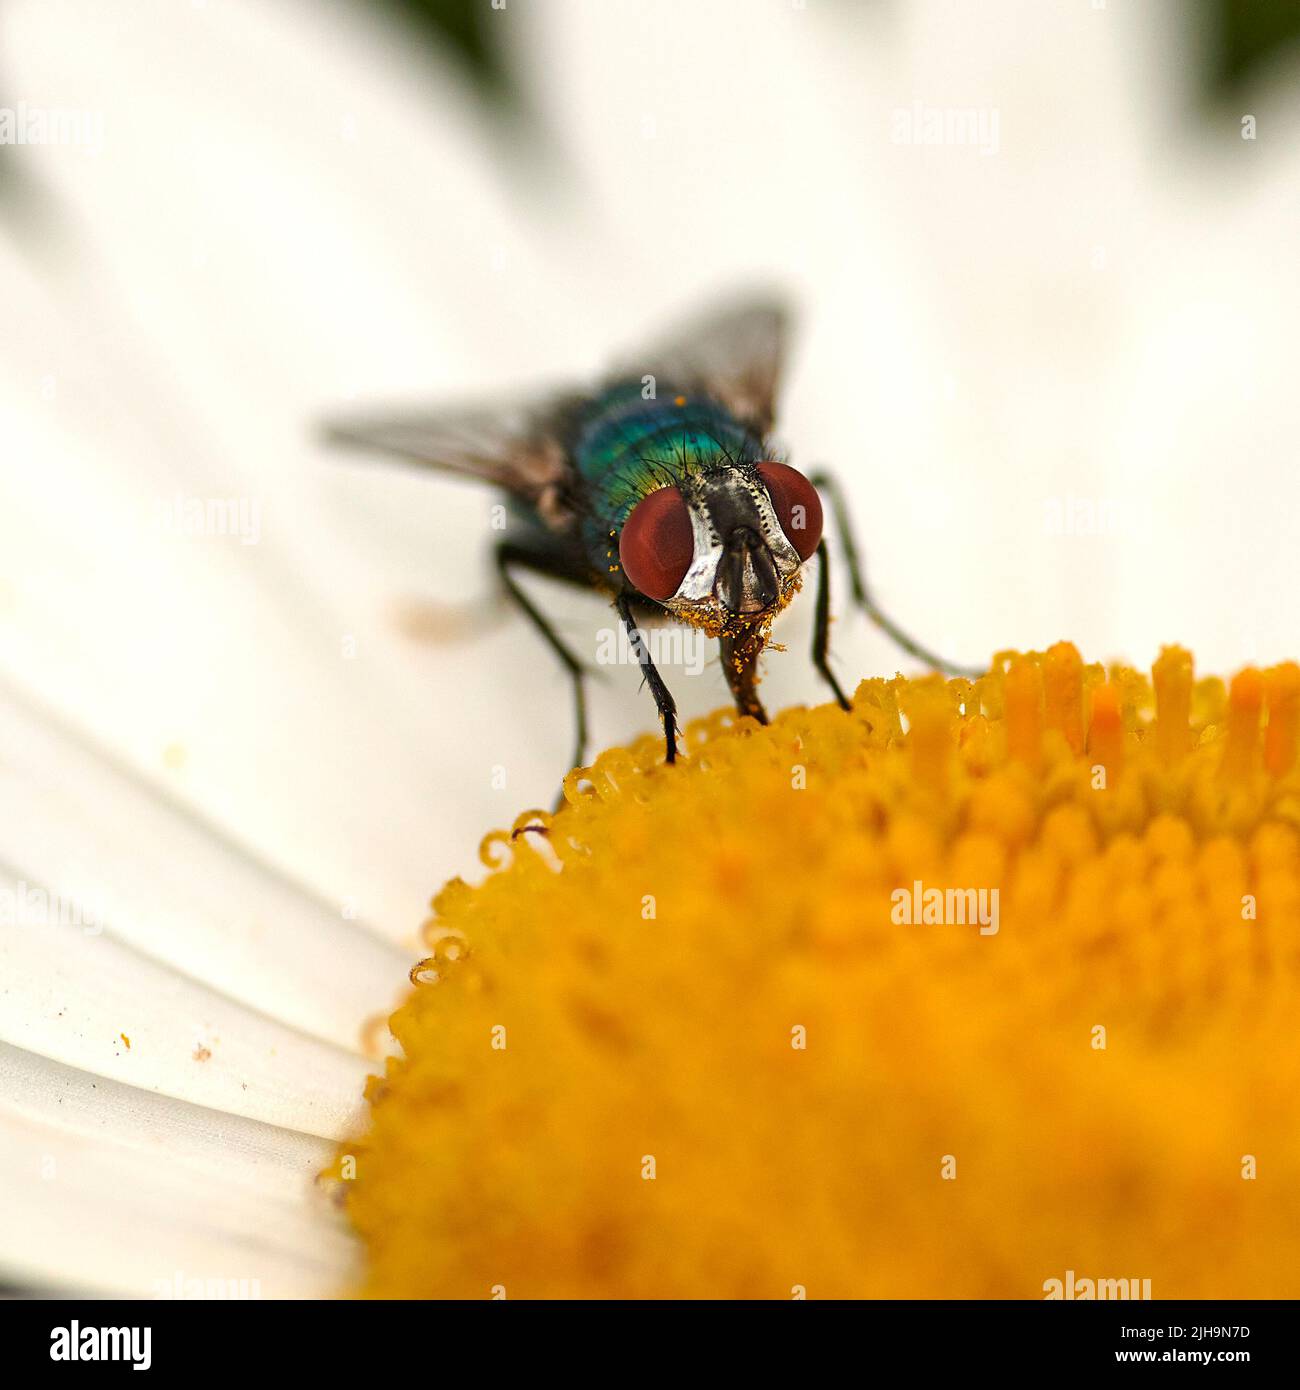 Mouche verte commune pollinisant une fleur blanche de pâquerette. Gros plan d'une mouche se nourrissant du nectar d'un centre pistil jaune sur une plante. Macro d'un Banque D'Images